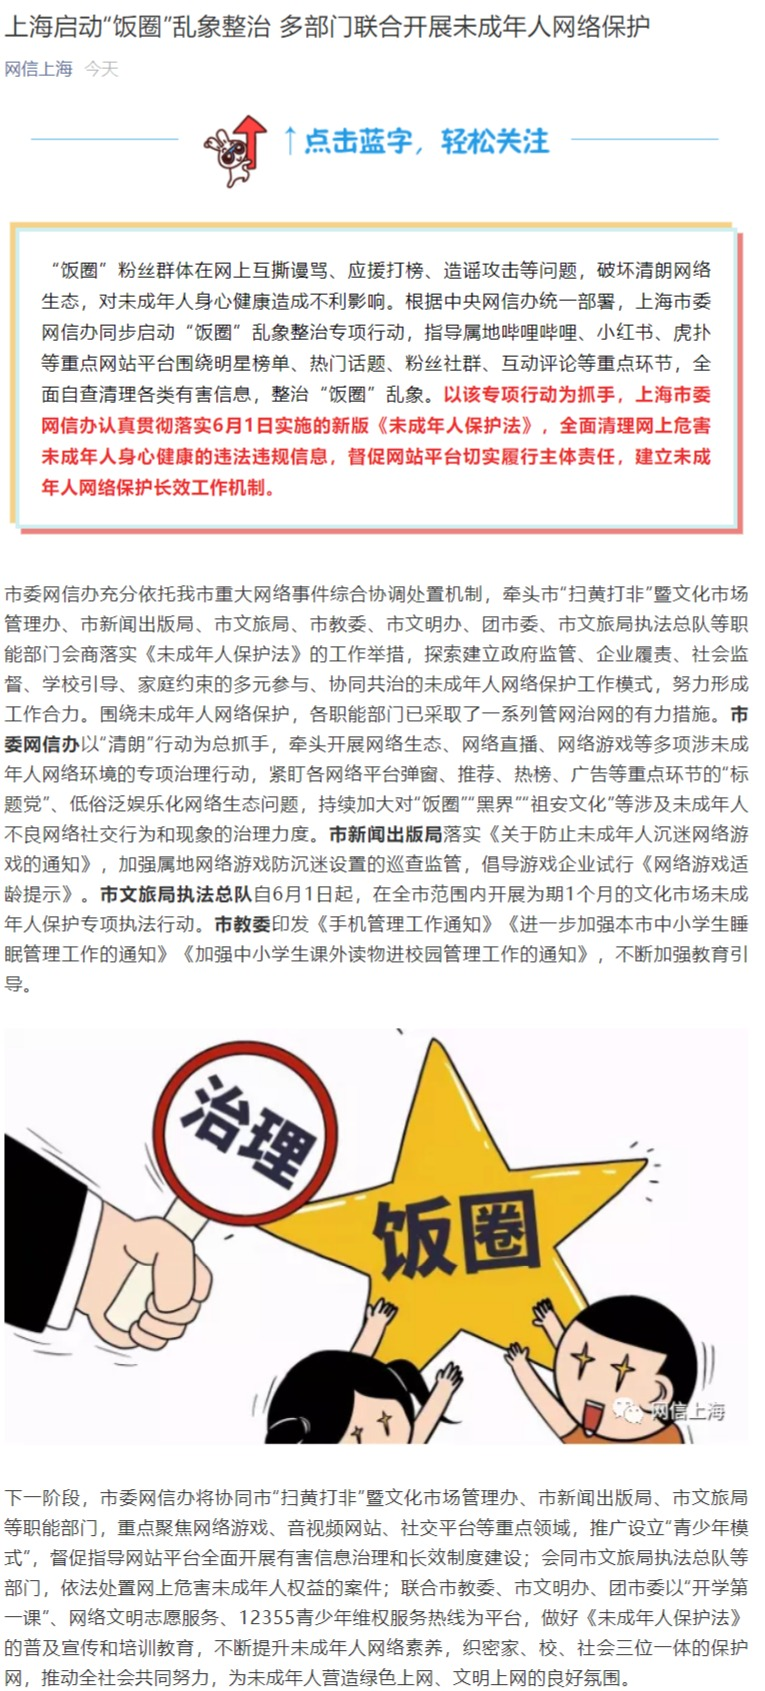 上海启动“饭圈”乱象整治 指导B站、小红书、虎扑等清理有害信息